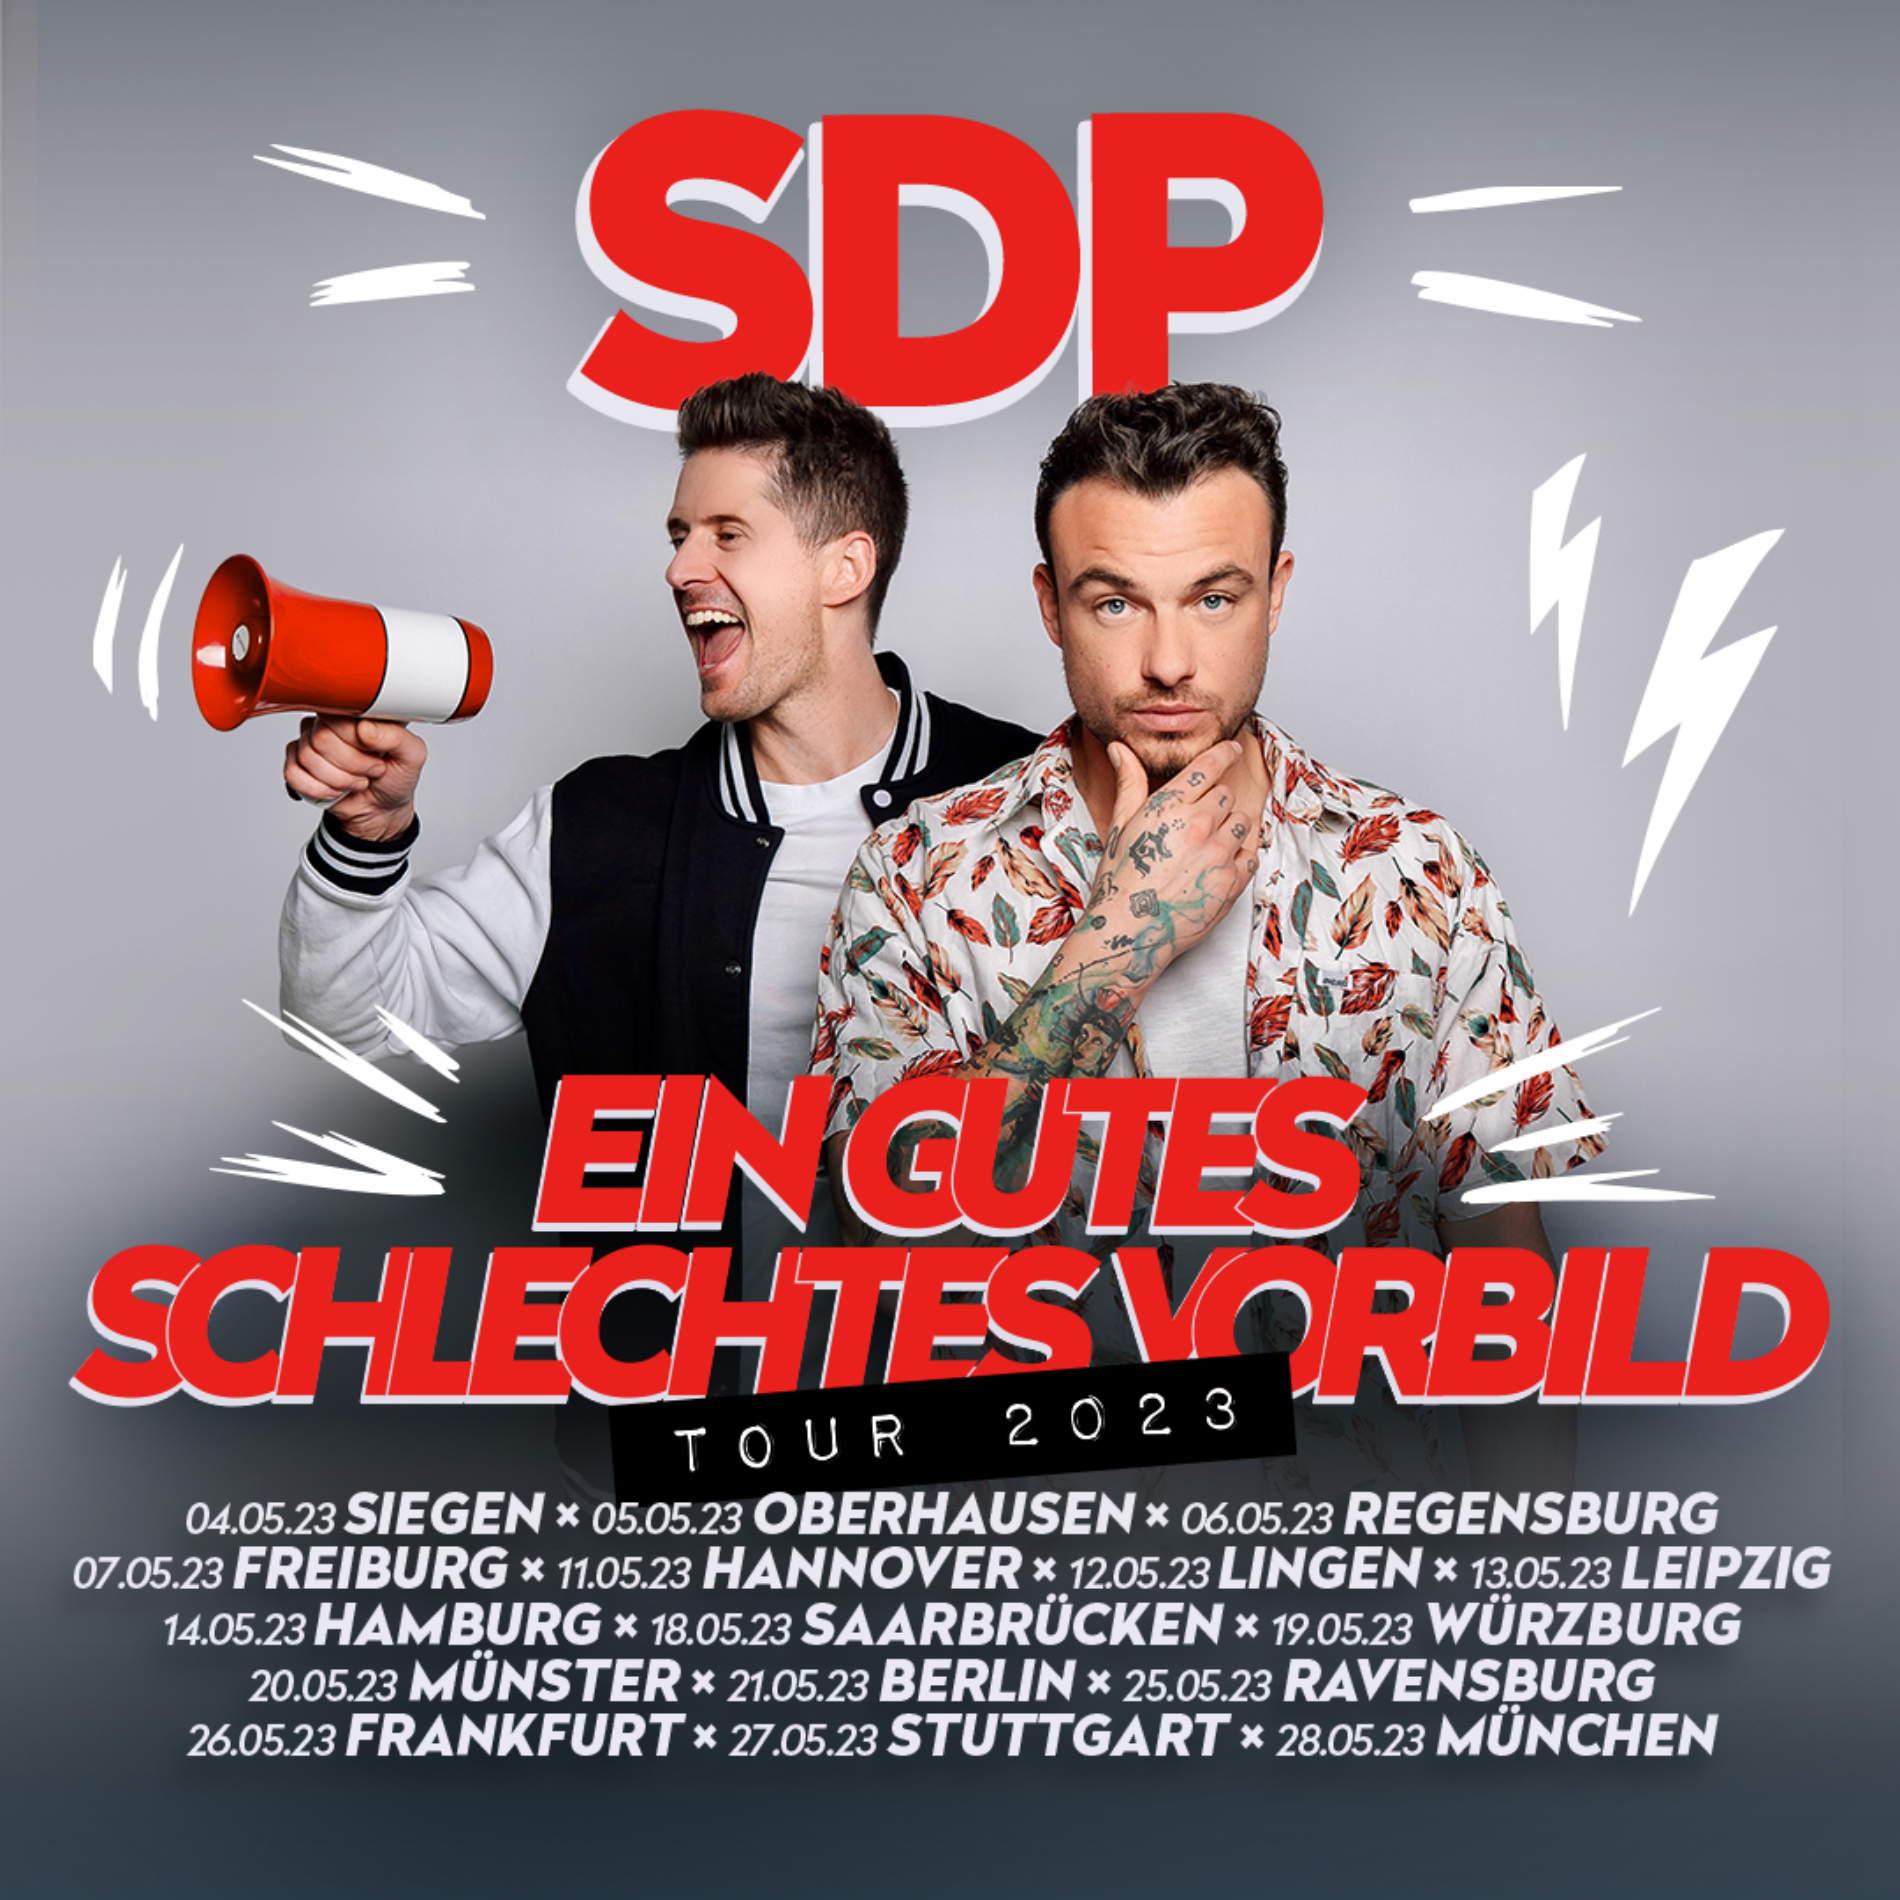 SDP – On Tour 2023